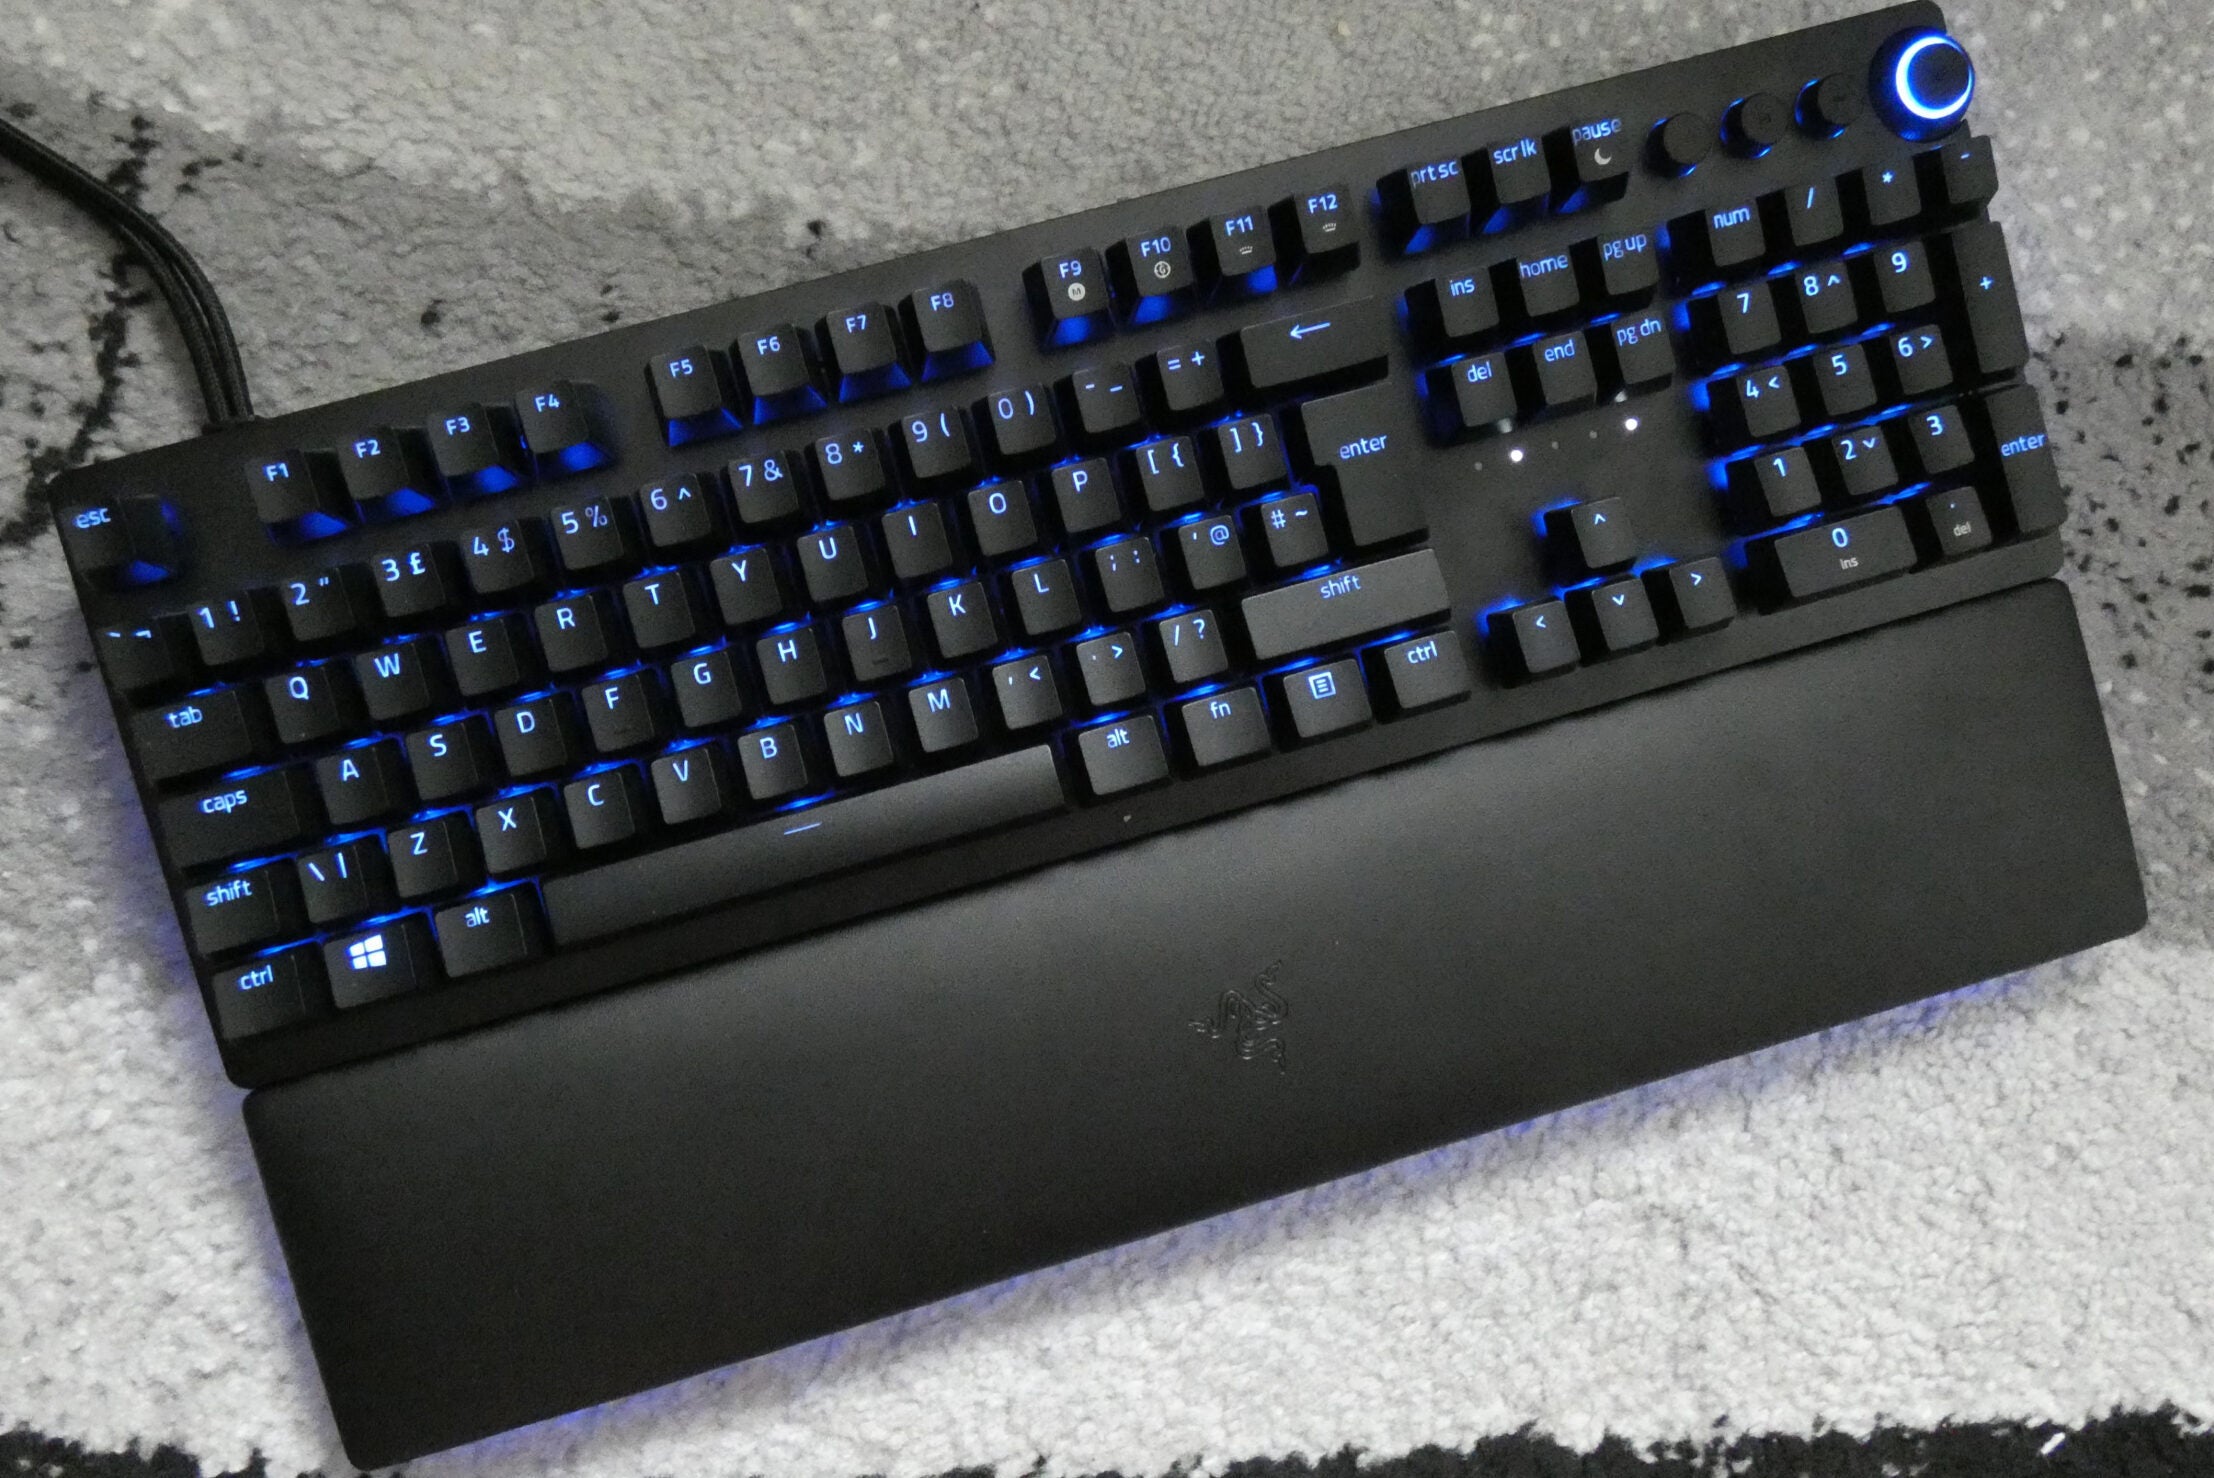 Vista desde arriba de un teclado analógico Huntsman V2 negro con luces azules debajo de las teclas